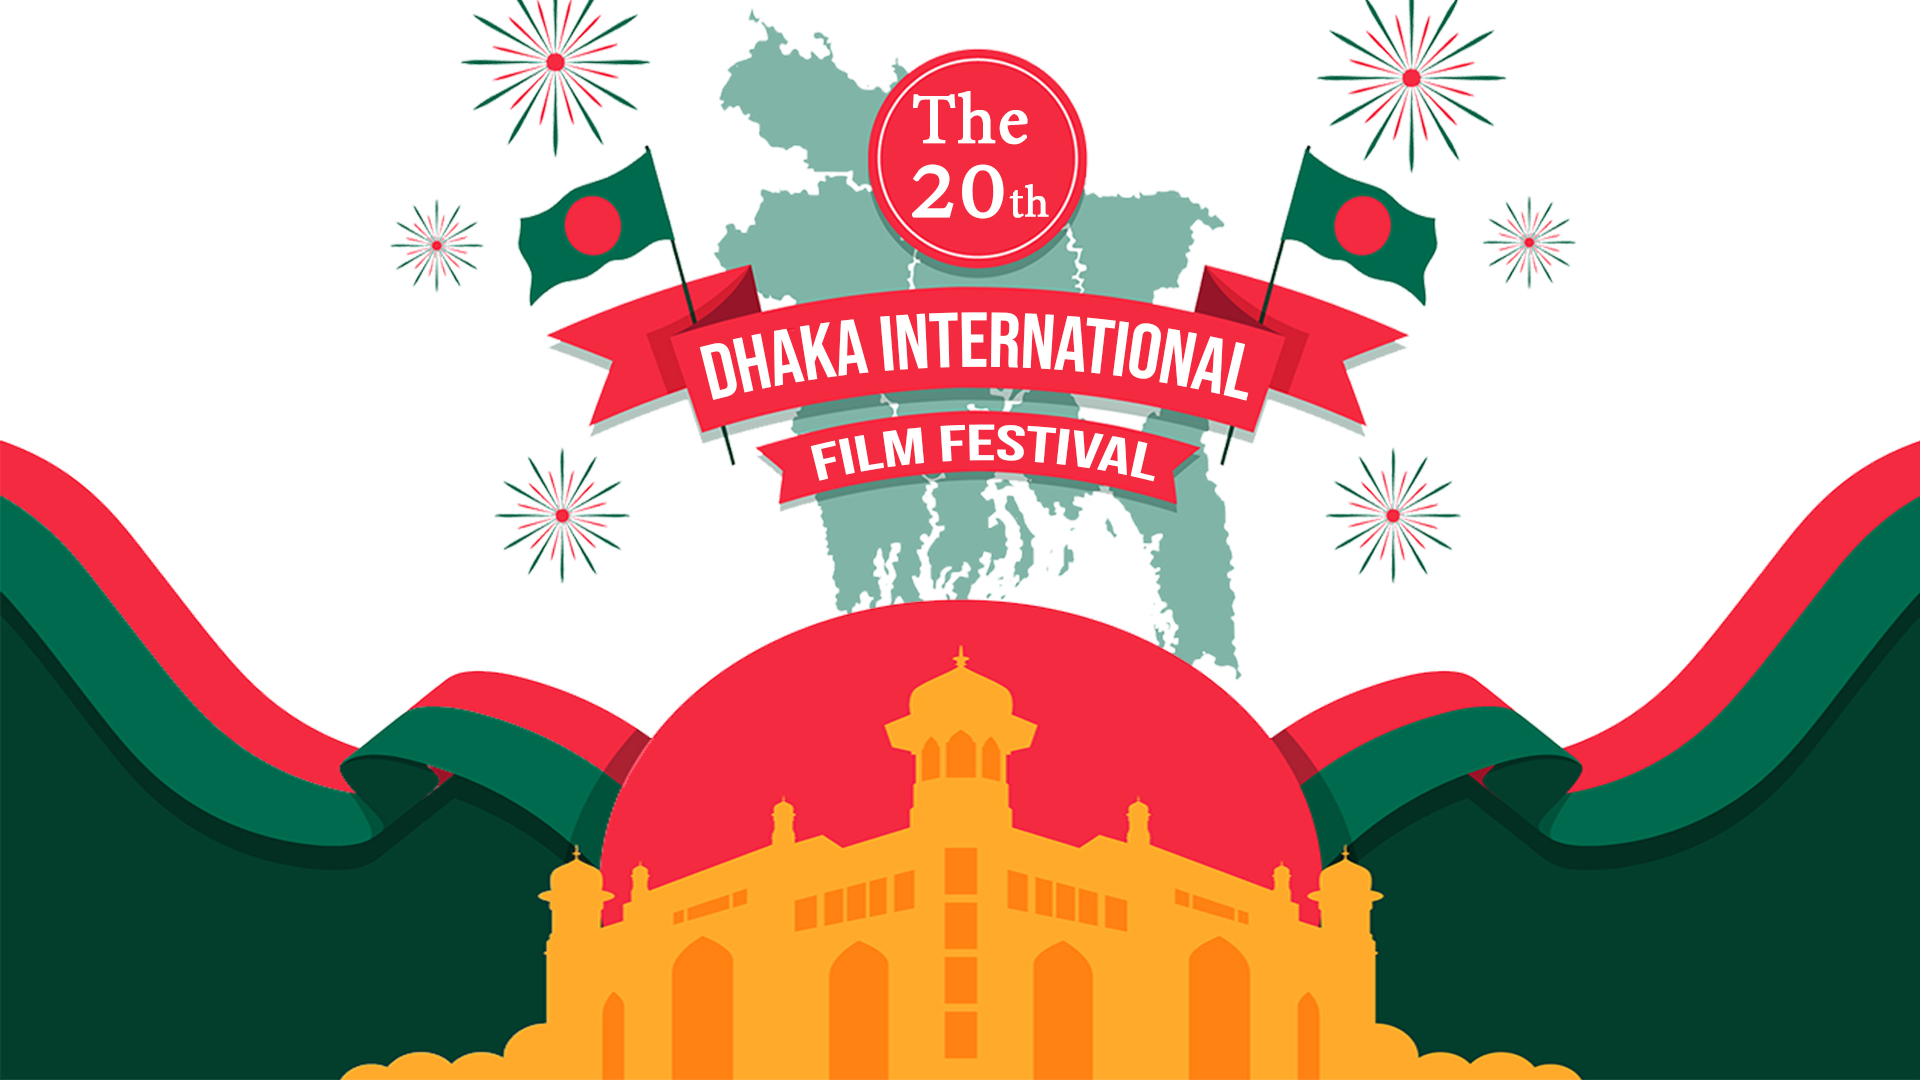 The Dhaka International Film Festival steps in 20